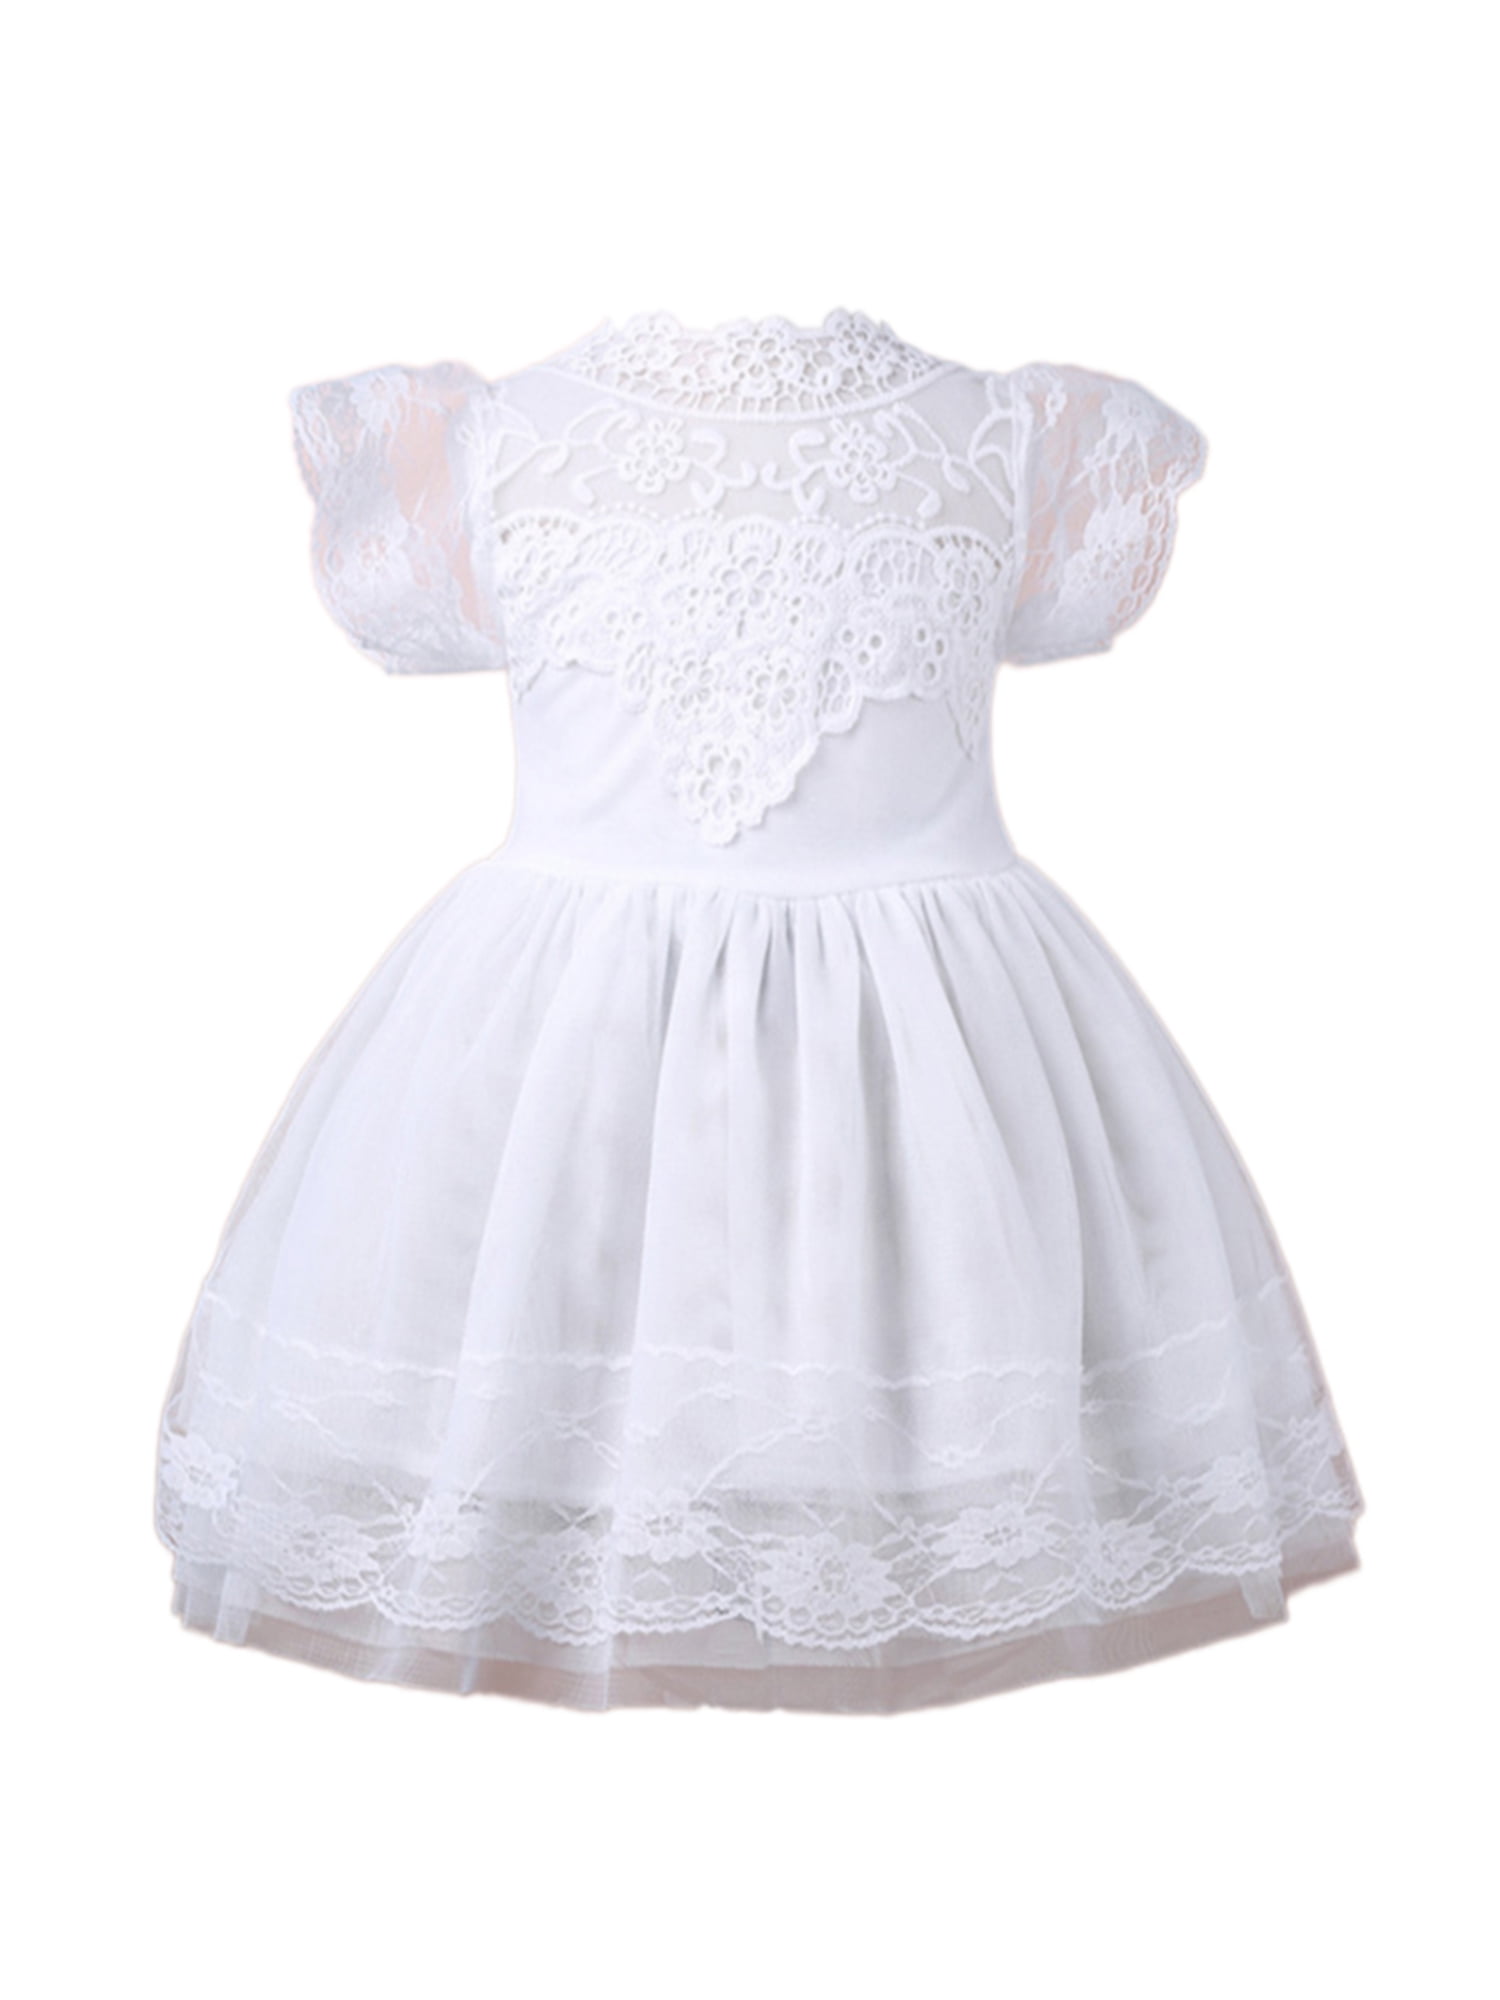 white sundress for toddler girl